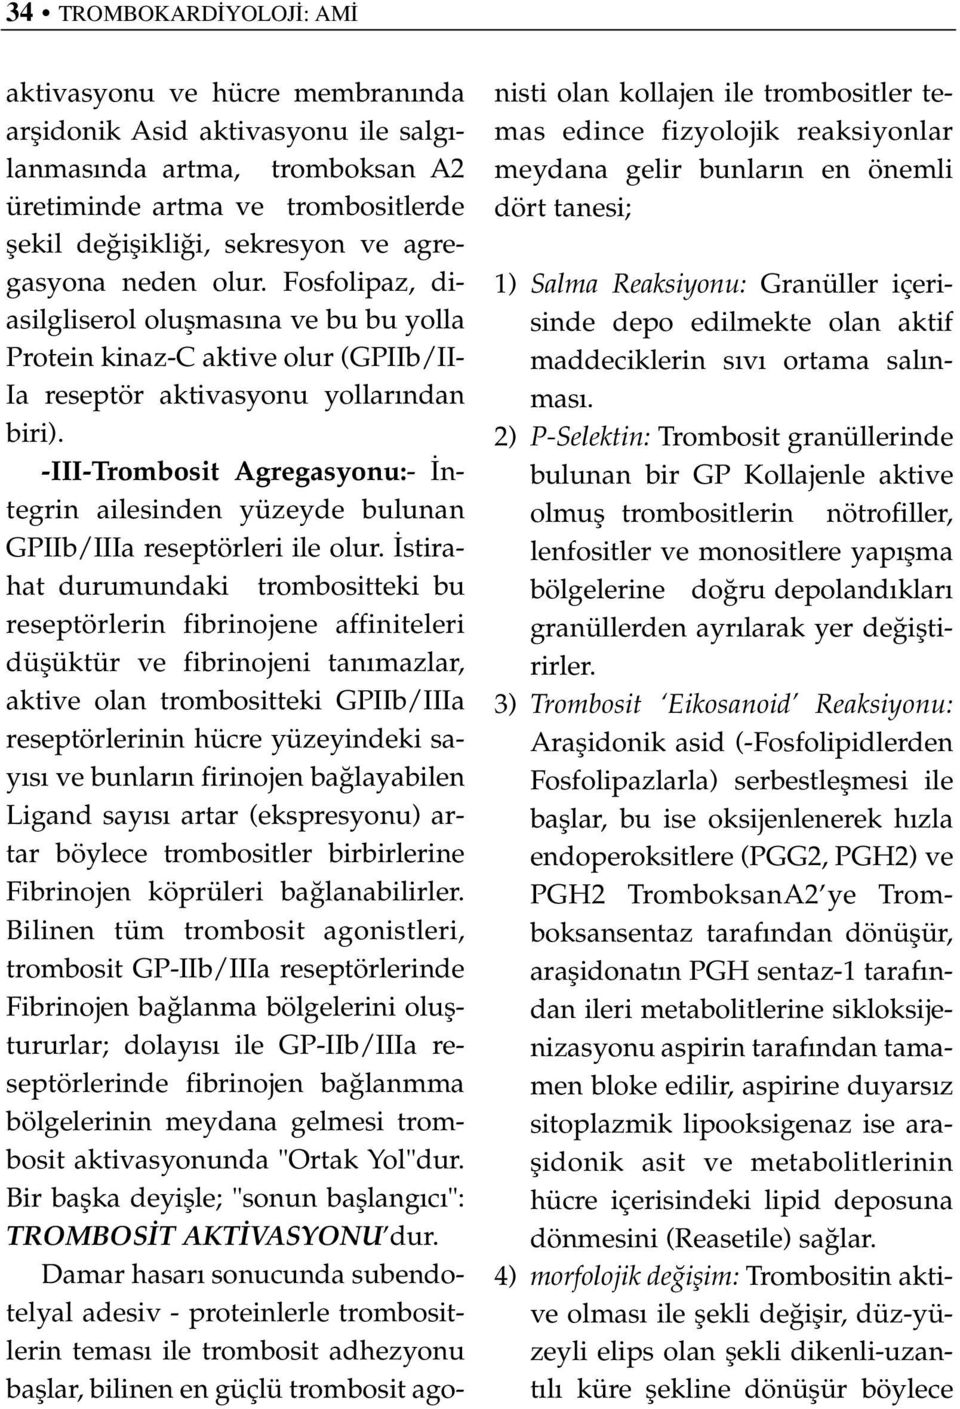 -III-Trombosit Agregasyonu:- ntegrin ailesinden yüzeyde bulunan GPIIb/IIIa reseptörleri ile olur.